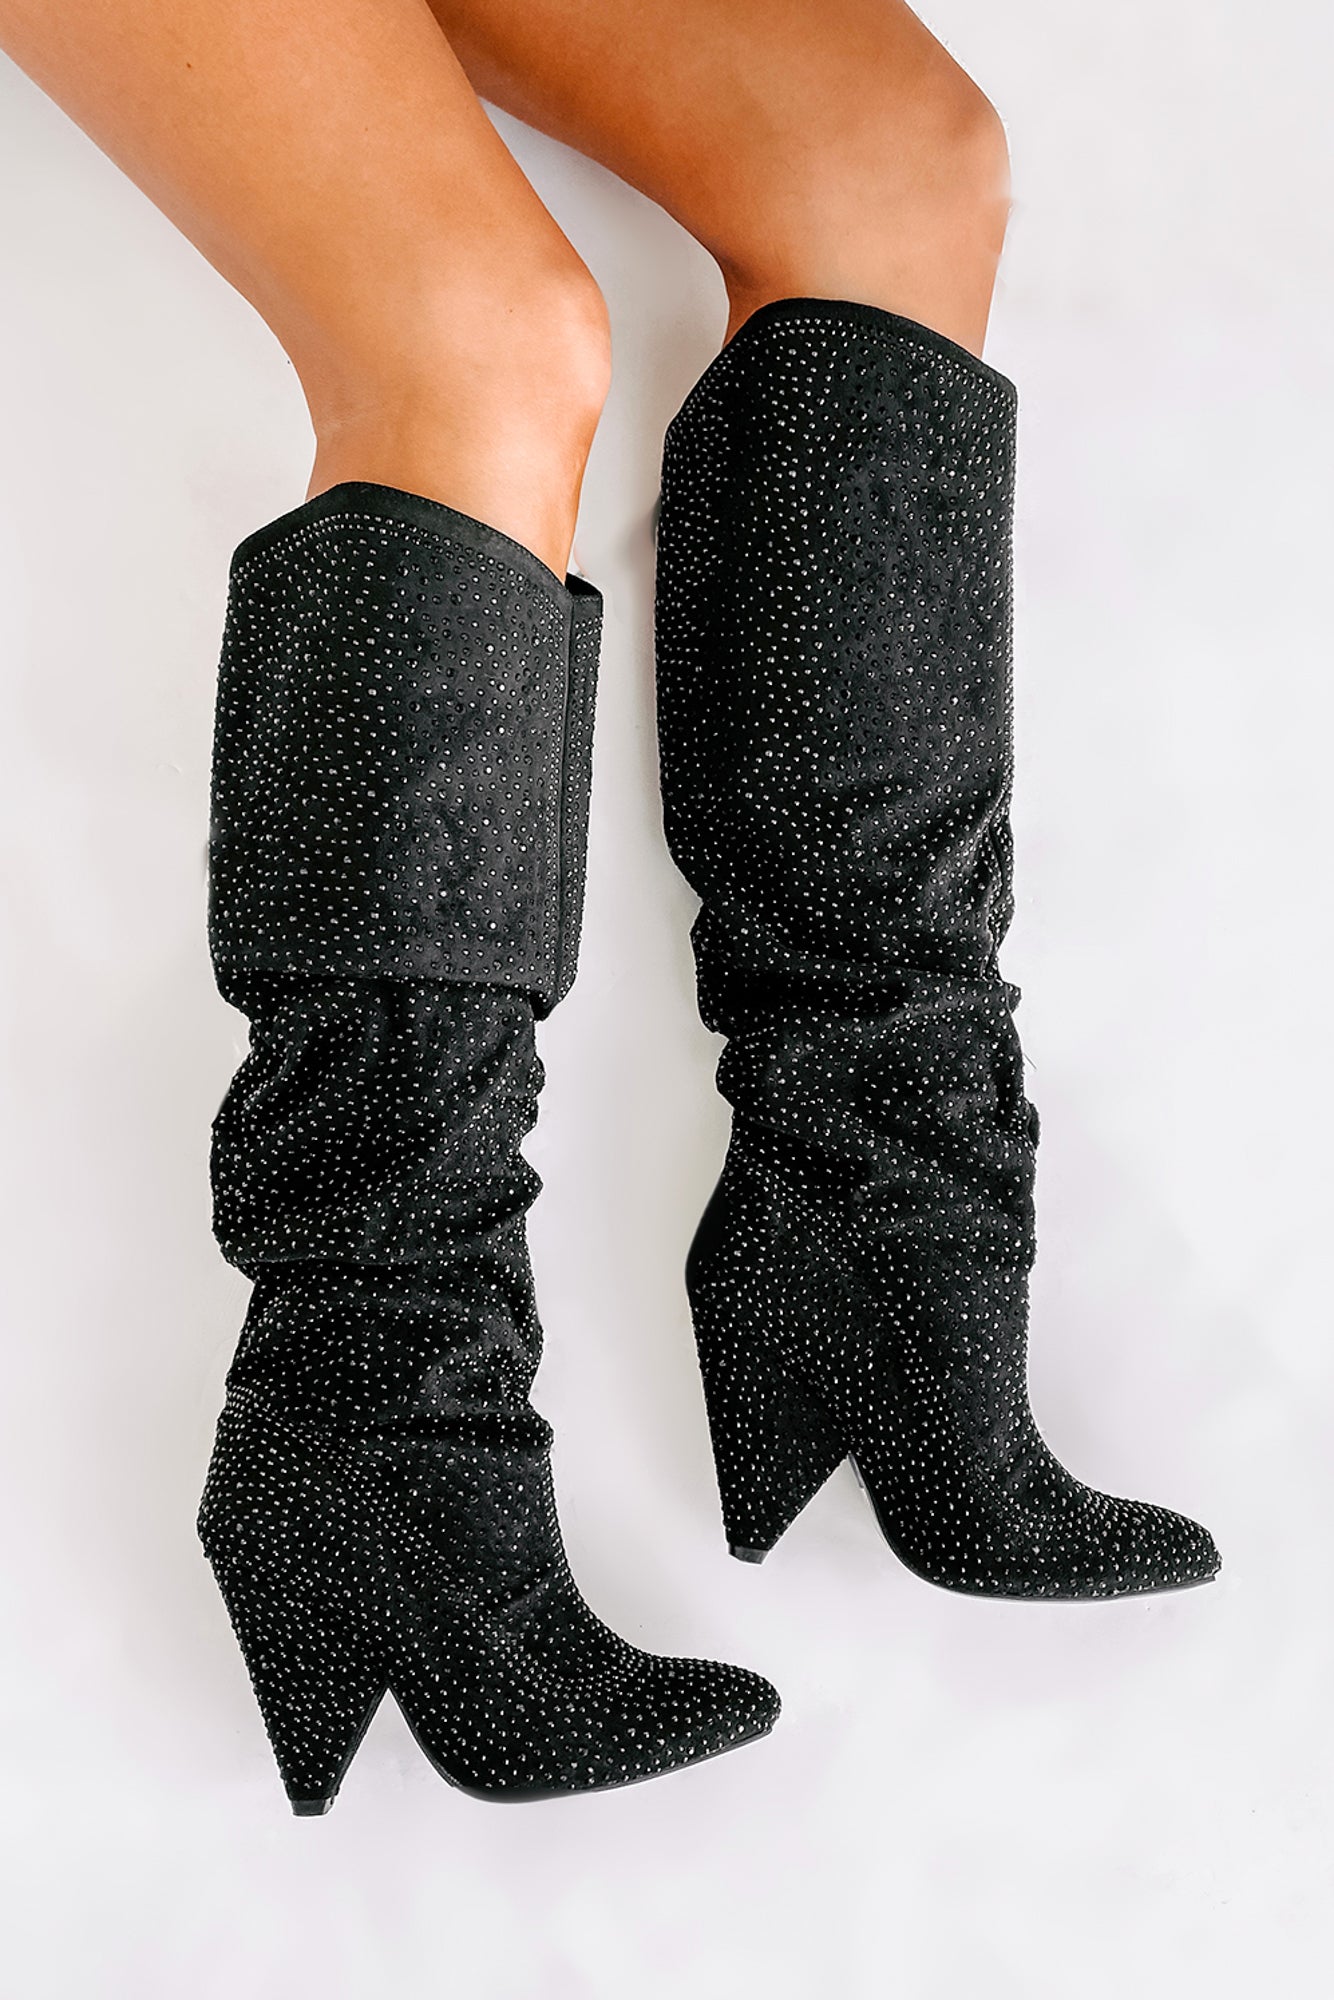 Levitate Rhinestone Knee High Slouchy Boots (Black) - NanaMacs